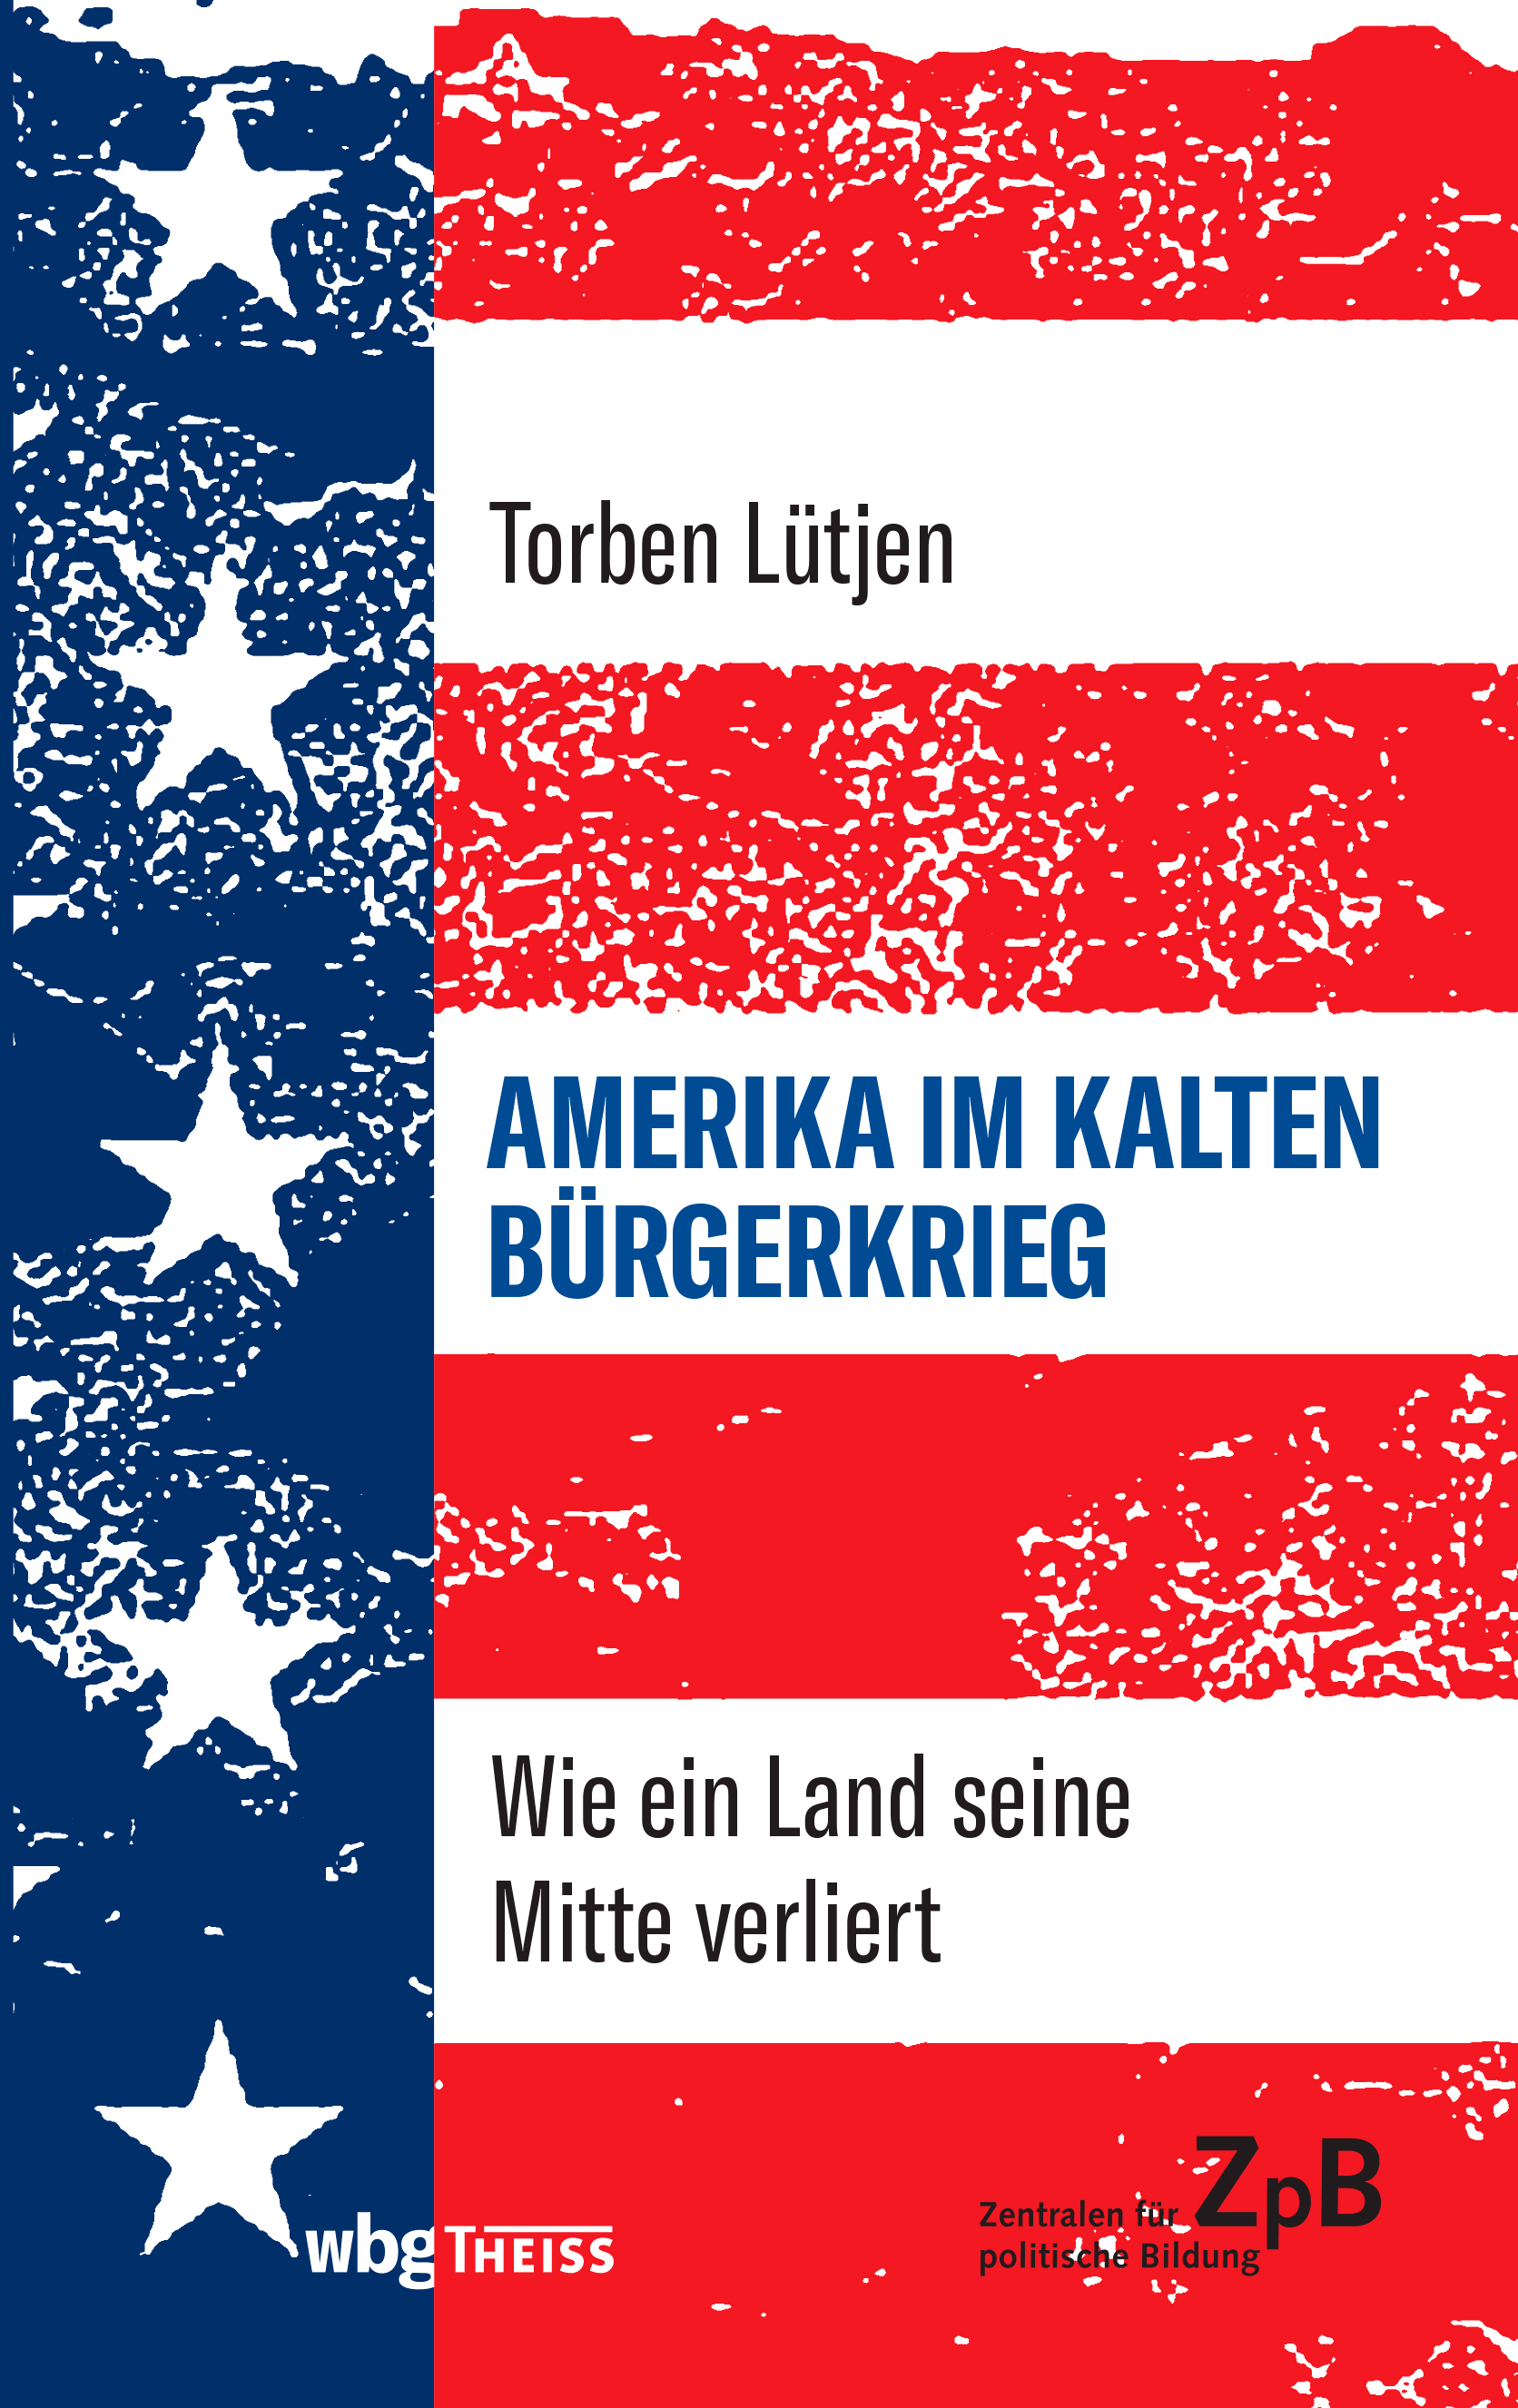 Zu sehen ist ein Buchcover mit dem Titel "AMERIKA IM KALTEN BÜRGERKRIEG" und dem Untertitel "Wie ein Land seine Mitte verliert". Der Autor des Buches ist Torben Lütjen. Das Cover hat die Farben der amerikanischen Flagge – Rot, Weiß und Blau – und die Anordnung ähnelt der Flagge, wobei die Sterne und Streifen ein texturiertes, verwittertes Aussehen haben. Am unteren Rand stehen Logos: "wbv W. Bertelsmann Verlag" und "ZpB Zentralen für politische Bildung". Bei Klick vergrößert sich das Bild.